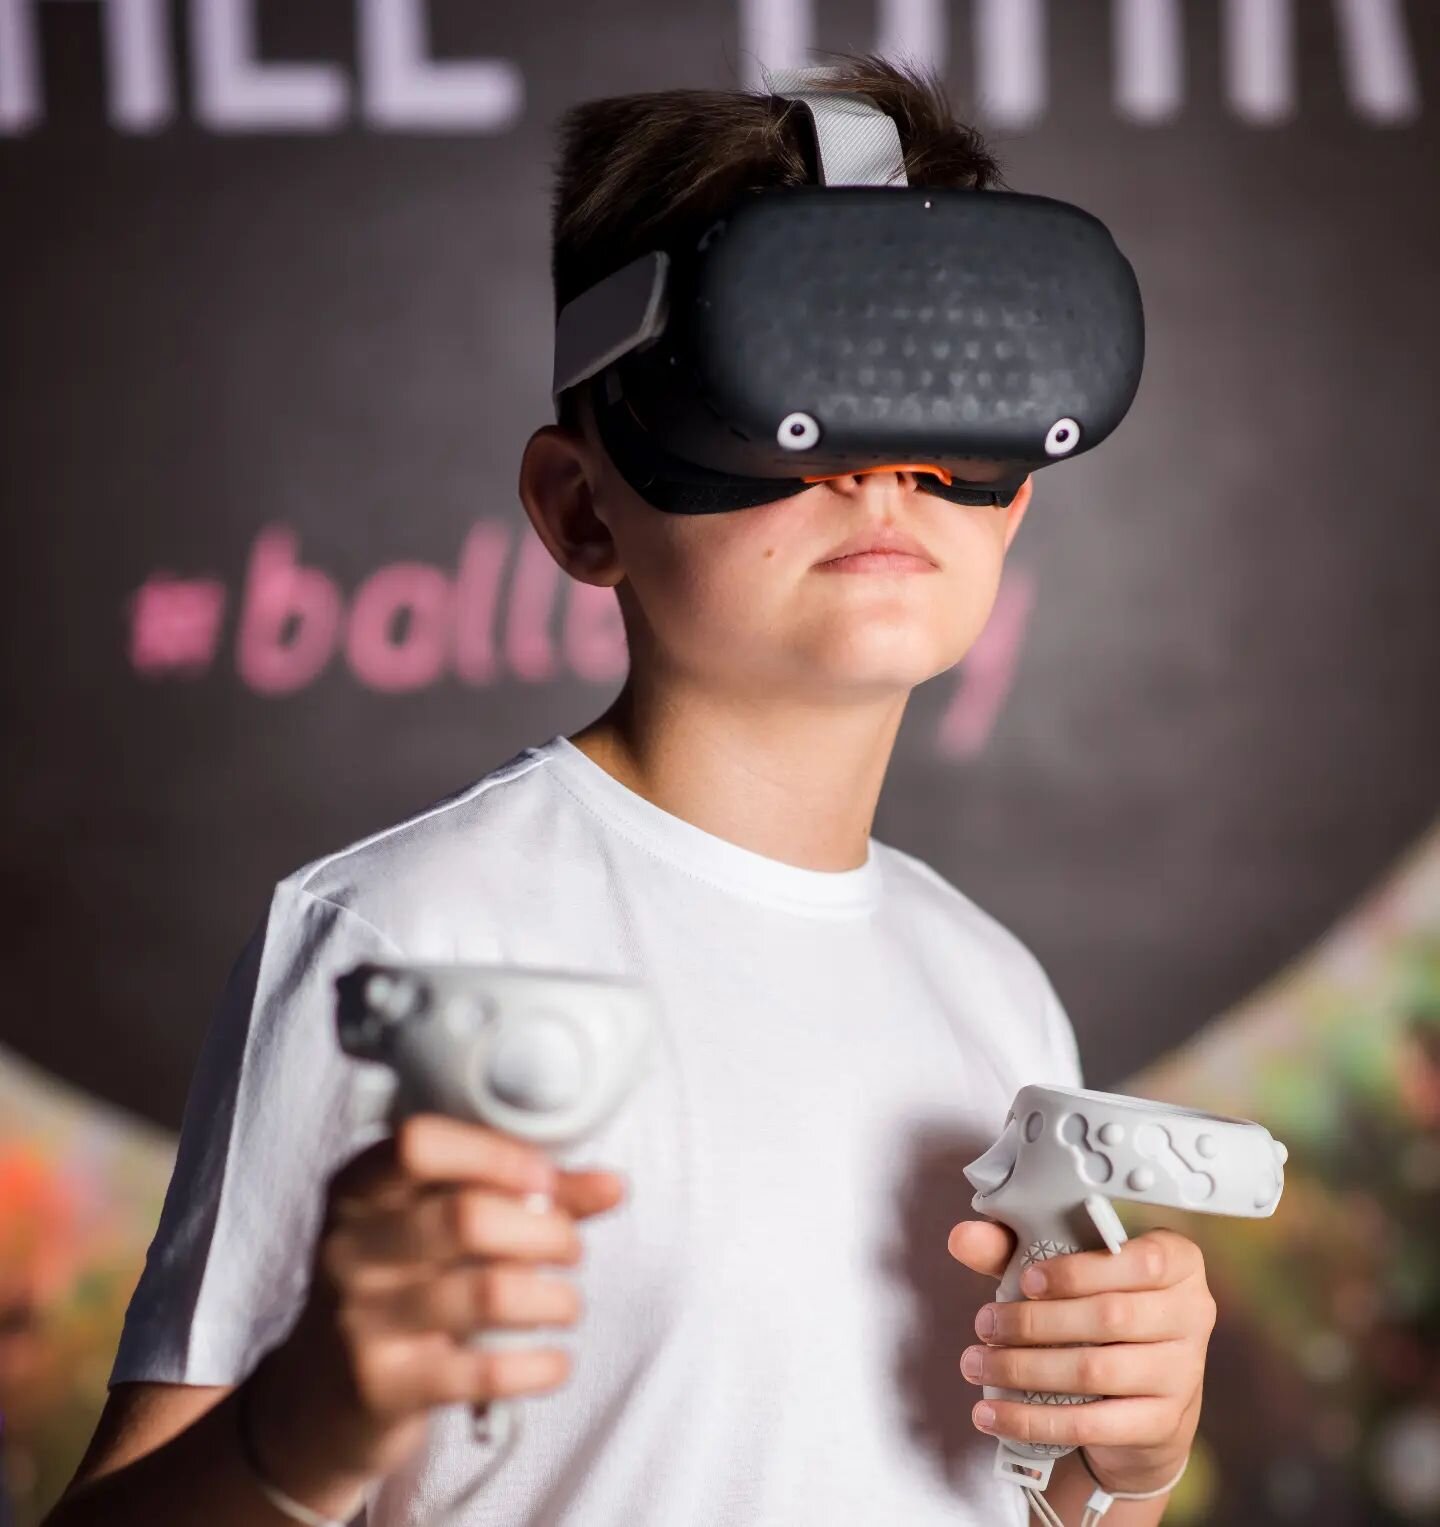 🌊 На пике впечатлений🙈

Снова и снова приглашаем вас познать магию виртуальной реальности в BALL BAR! 

Совершите VR-путешествие в захватывающий мир! Покорить космос или сразиться с Дартом Вейдером &mdash; выбор за вами ✨ Мы предлагаем широкий выбо